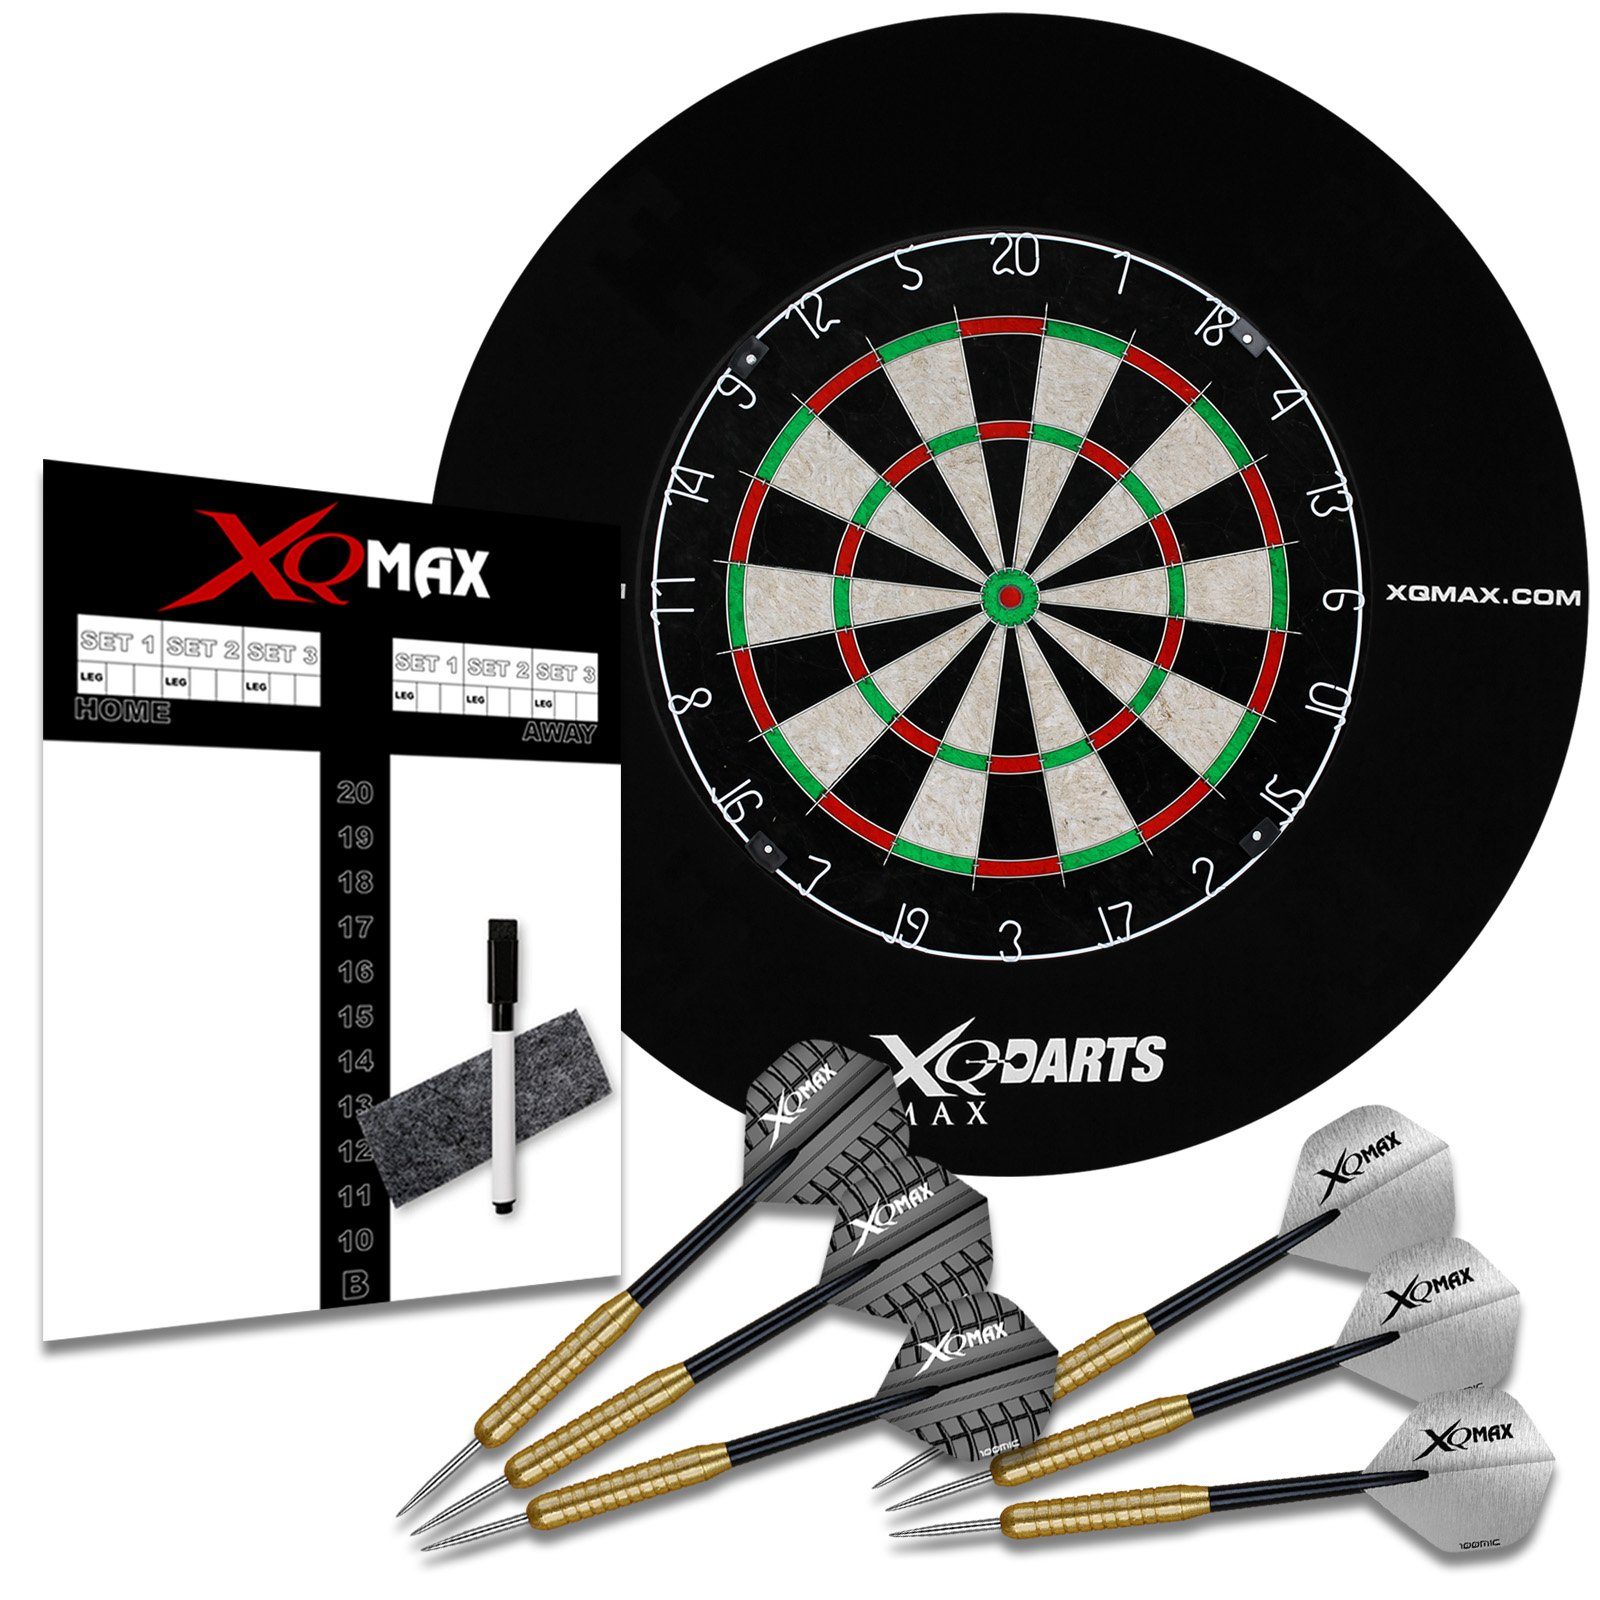 XQMAX Dartscheibe Dart Starter-Set mit Surround Ring schwarz, (Komplettset, Profi Dartset), inkl. 6 Pfeile Spielstandtafel Marker